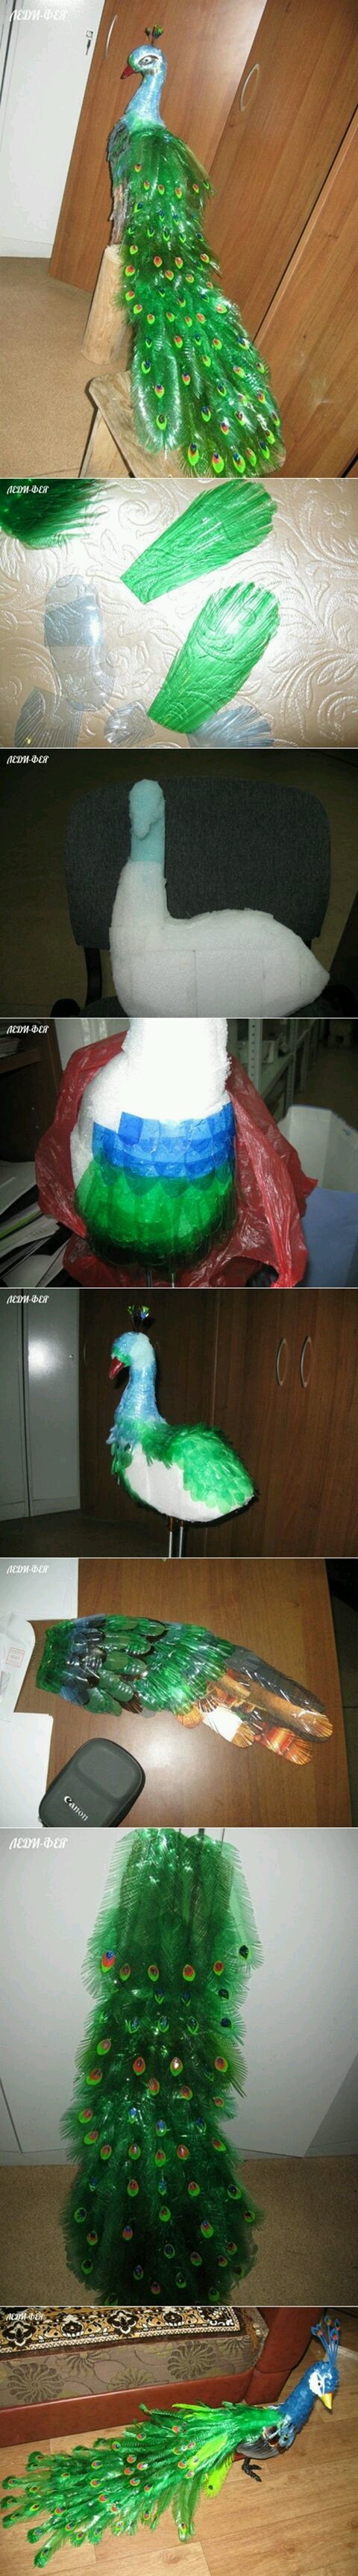 塑料瓶孔雀的制作过程图片